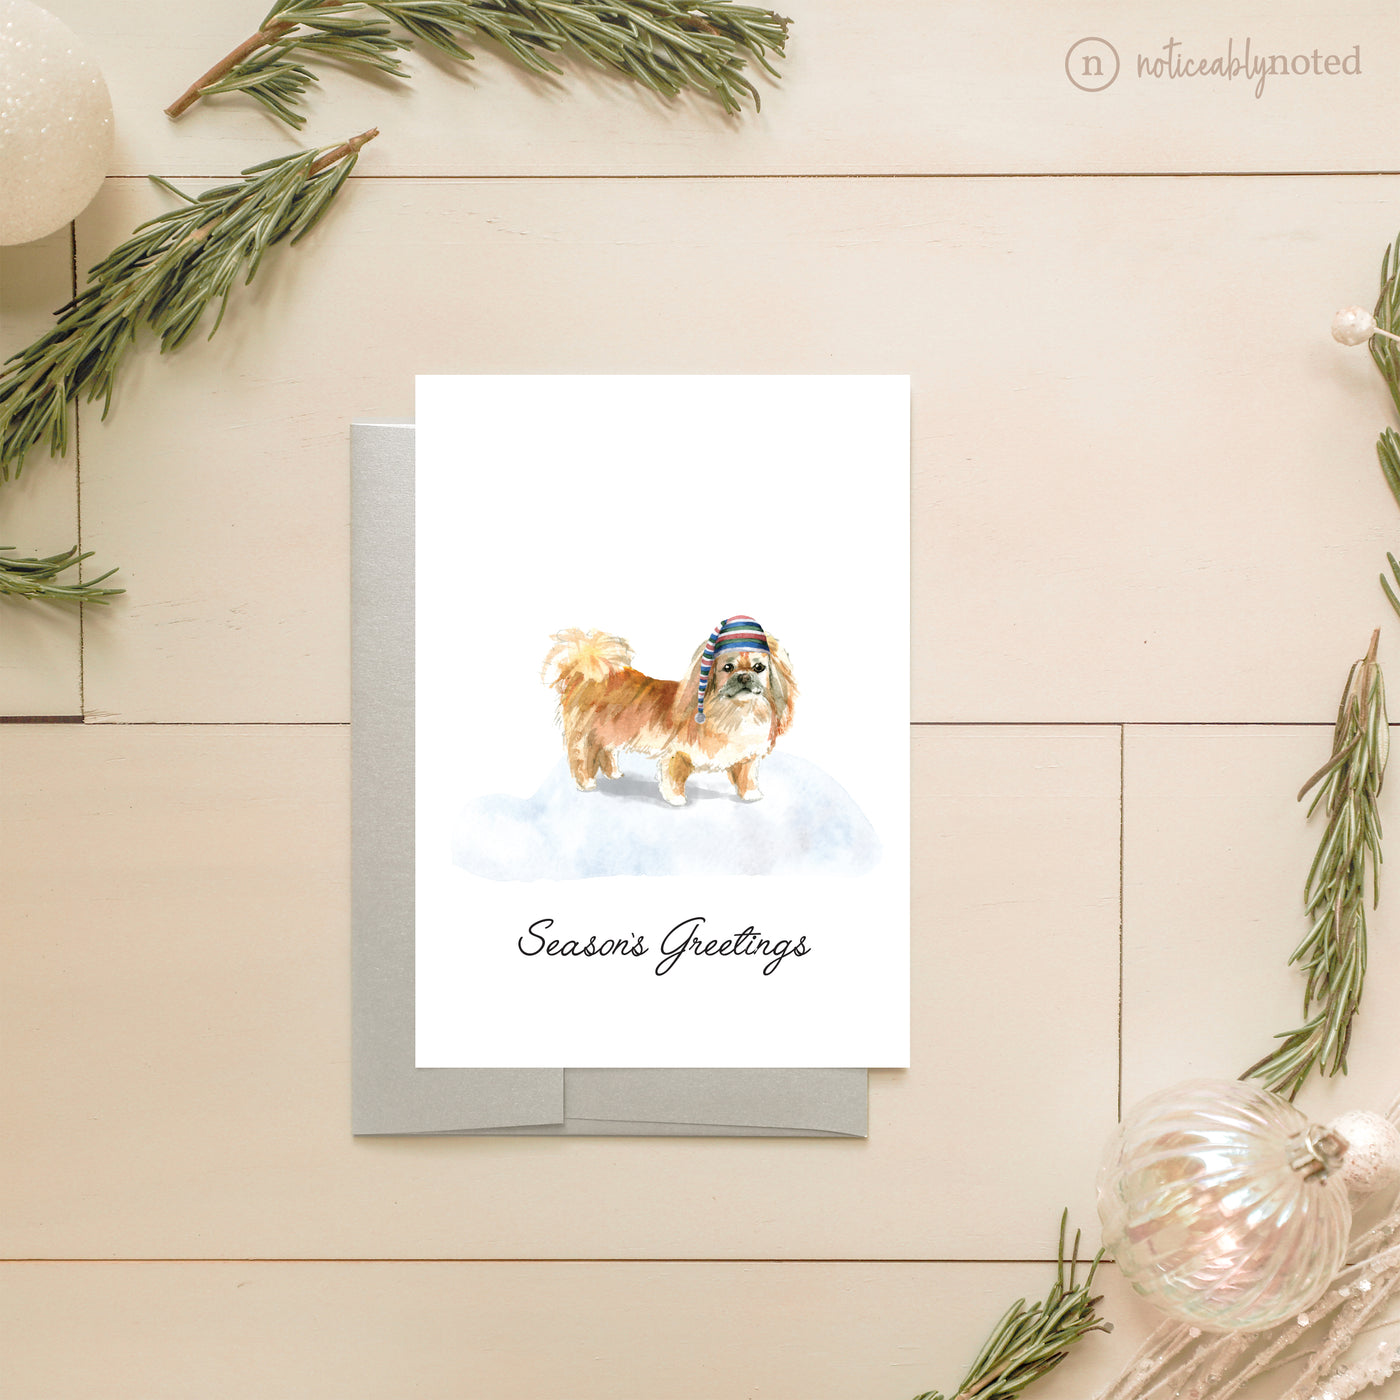 Pekingese Dog Holiday Card | Noticeably Noted